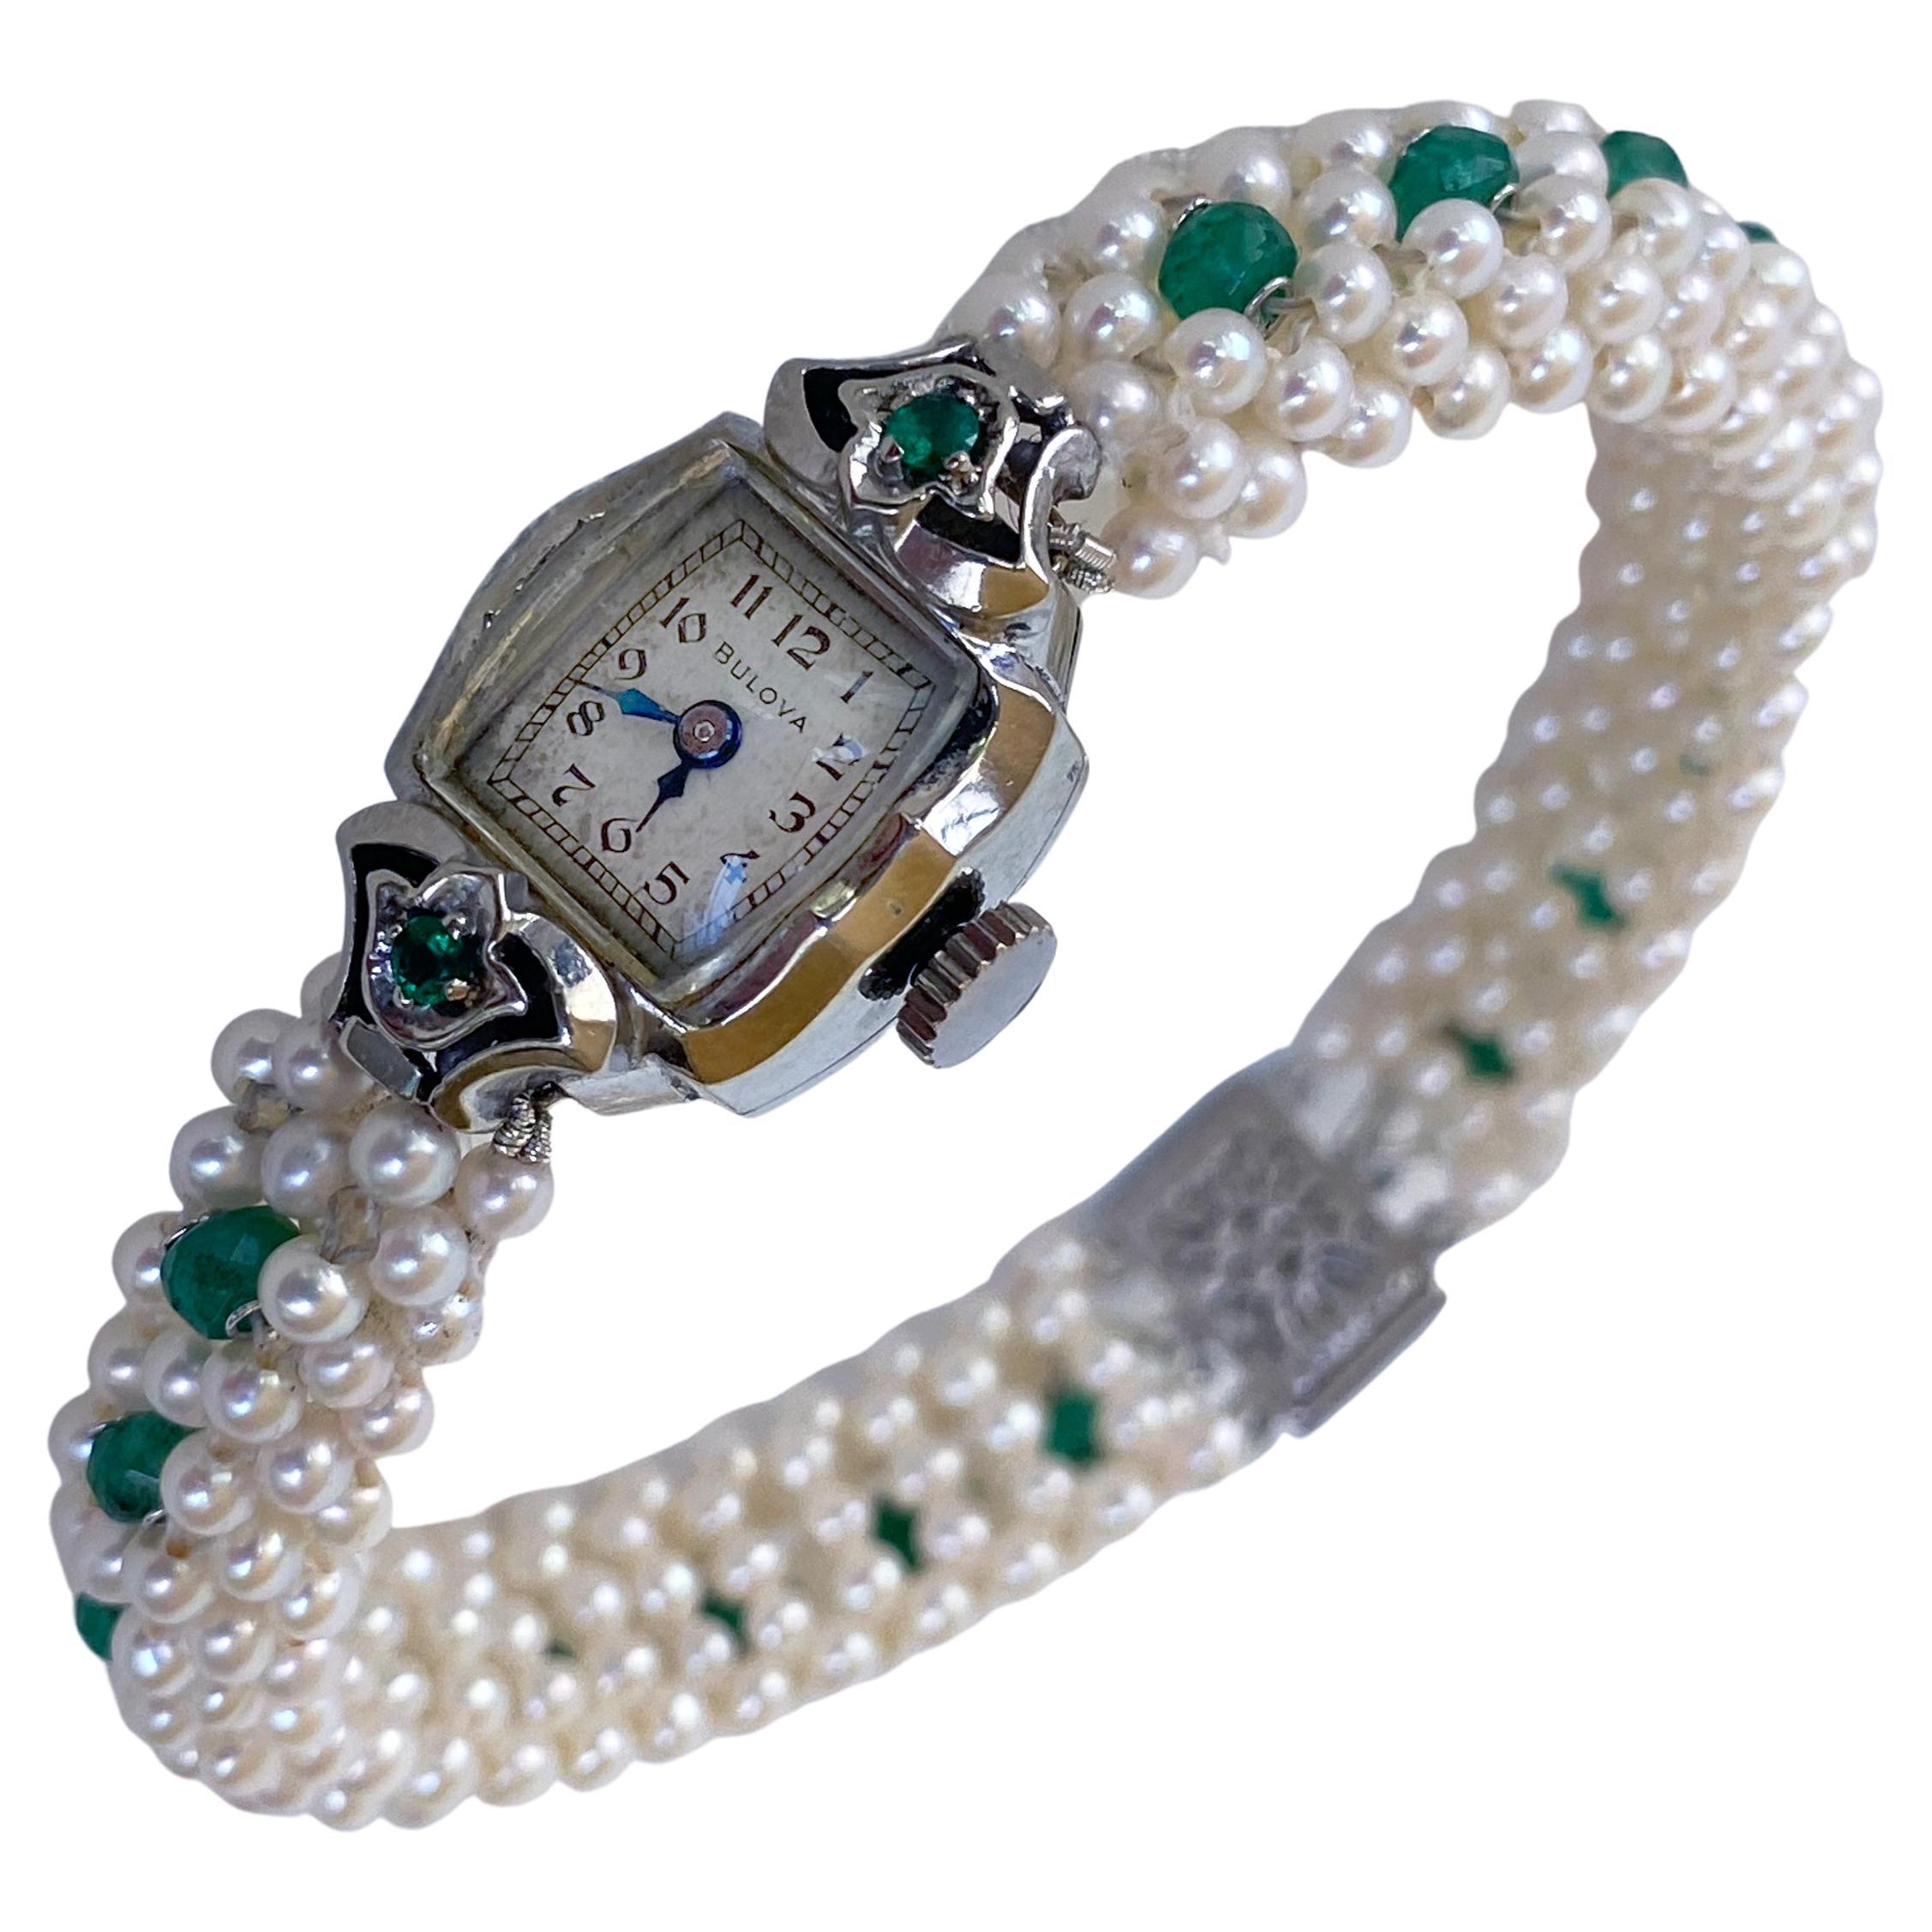 Marina J. Smaragdbesetzte Vintage-Uhr mit Perlen und 14k Weißgold